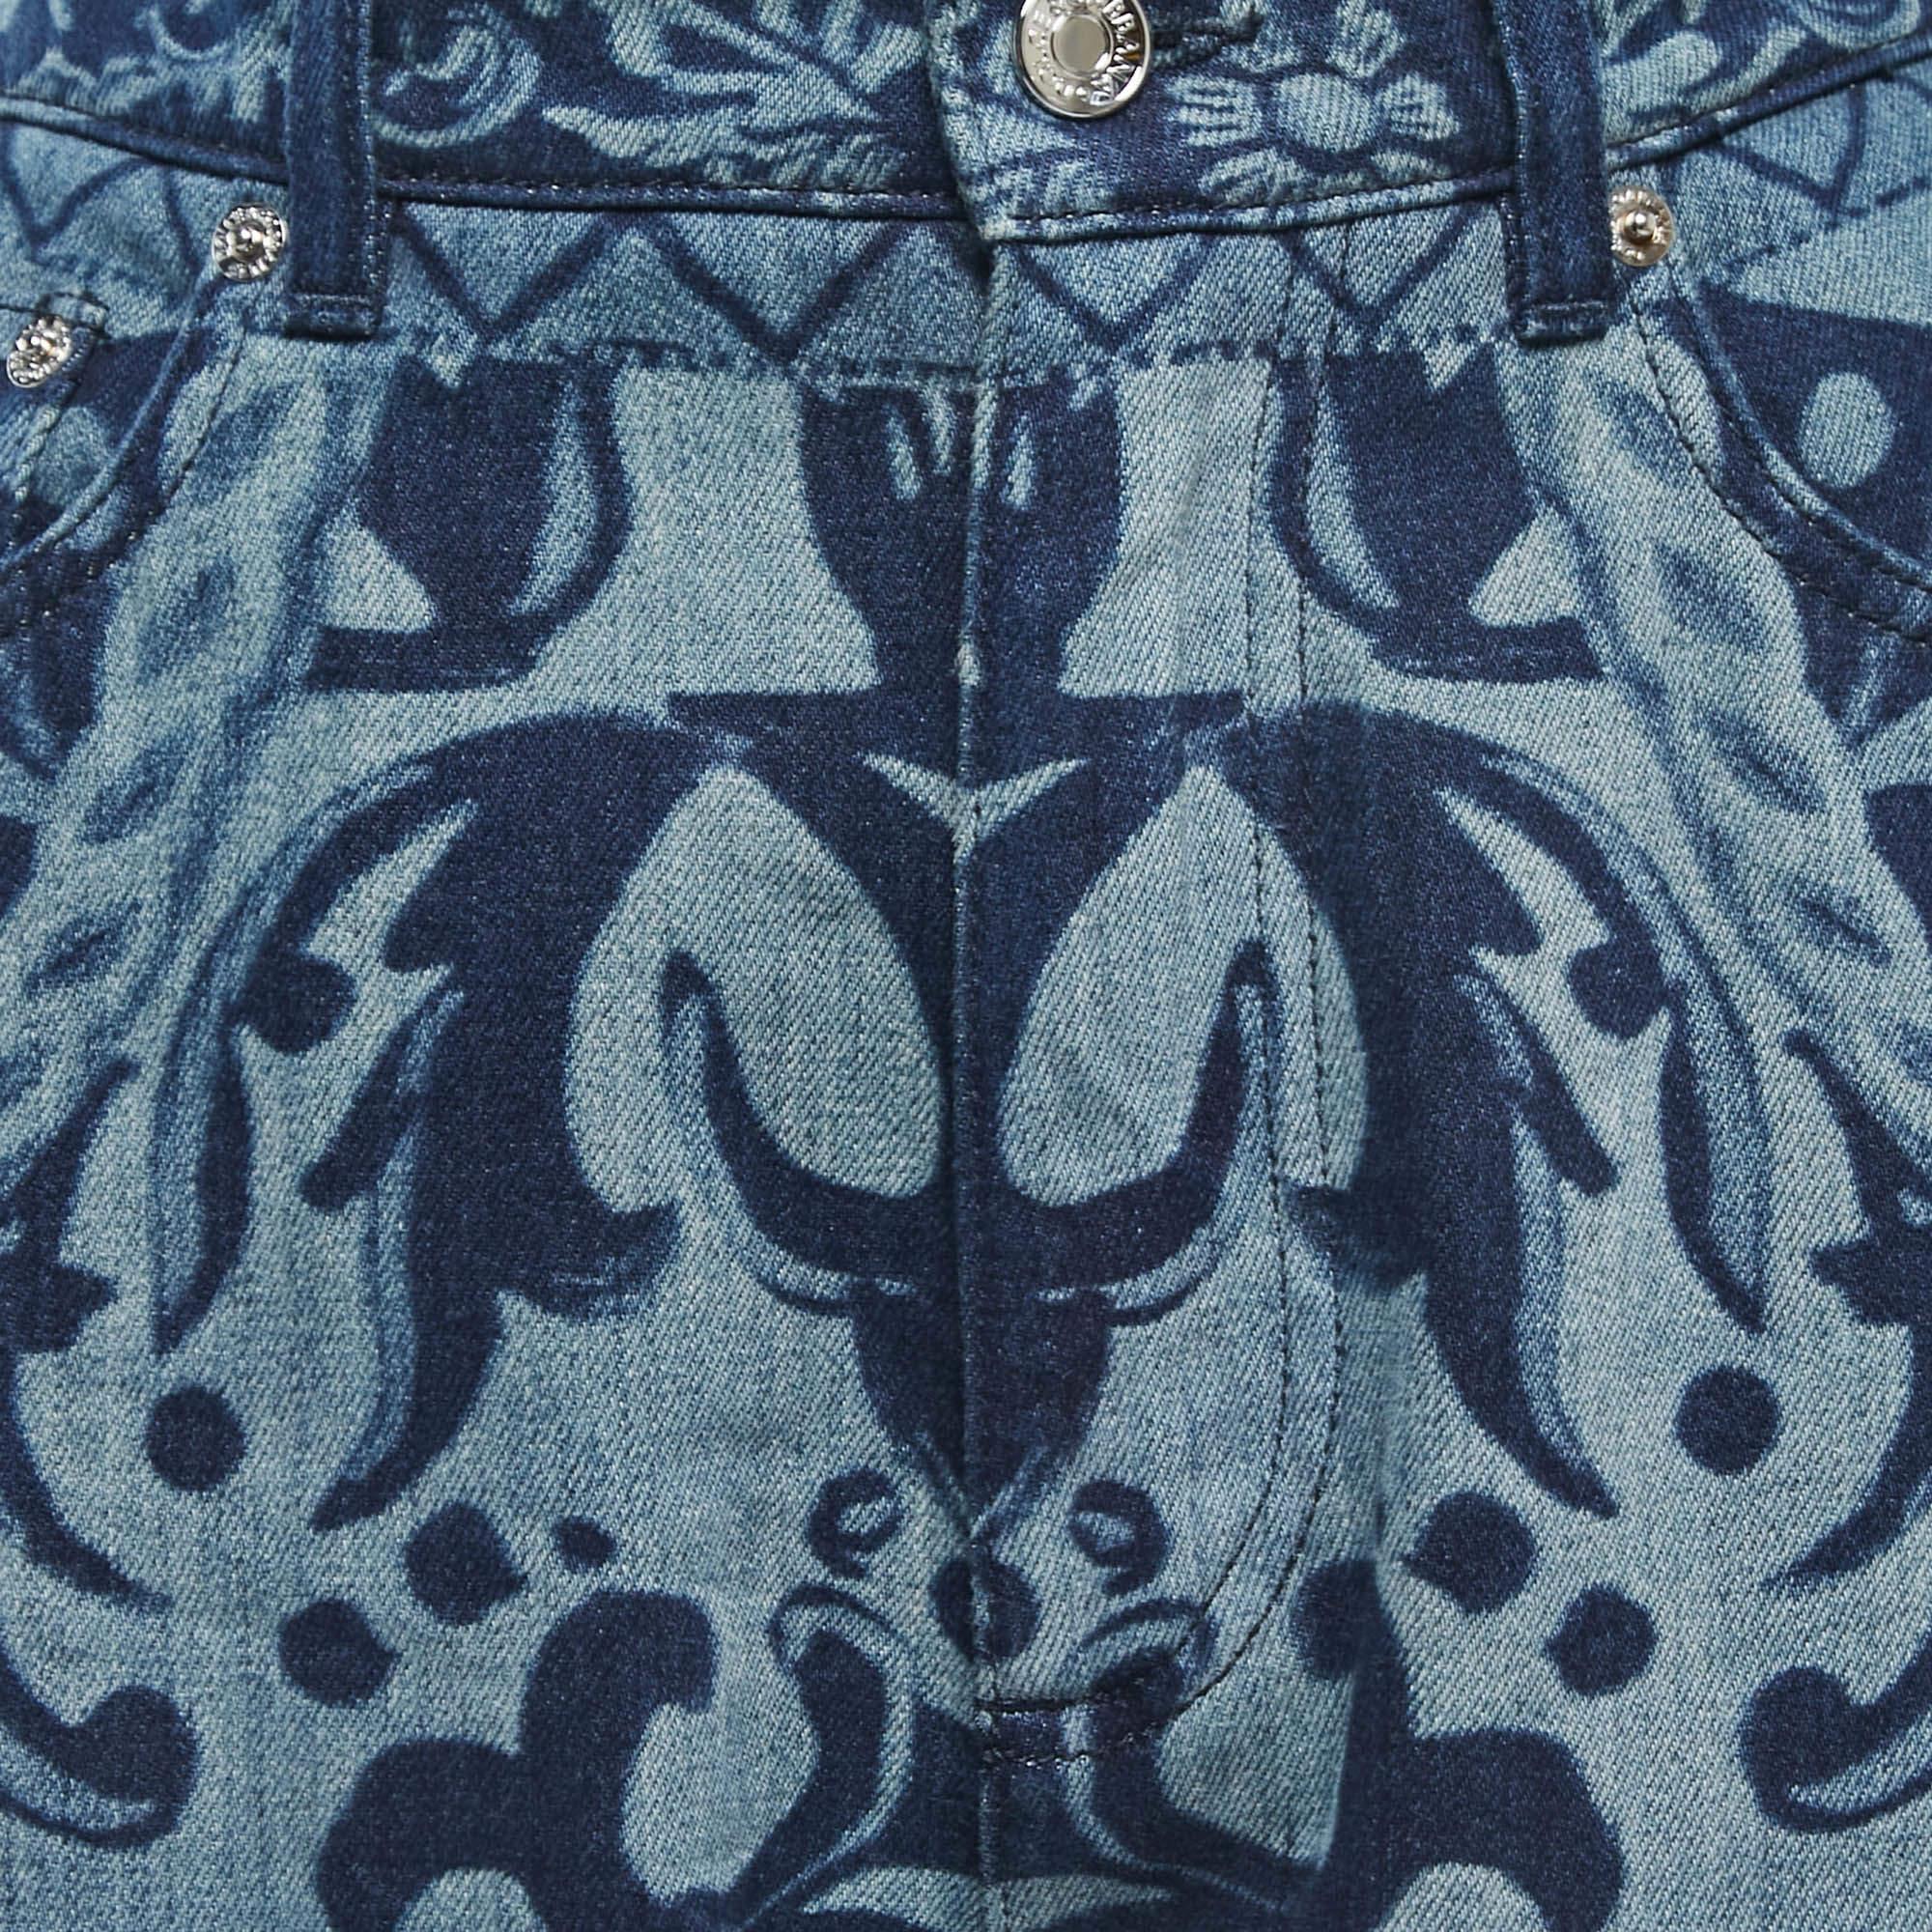 Dolce & Gabbana Blue Medieval Print Denim High Waist Boyfriend Jeans S Waist 26